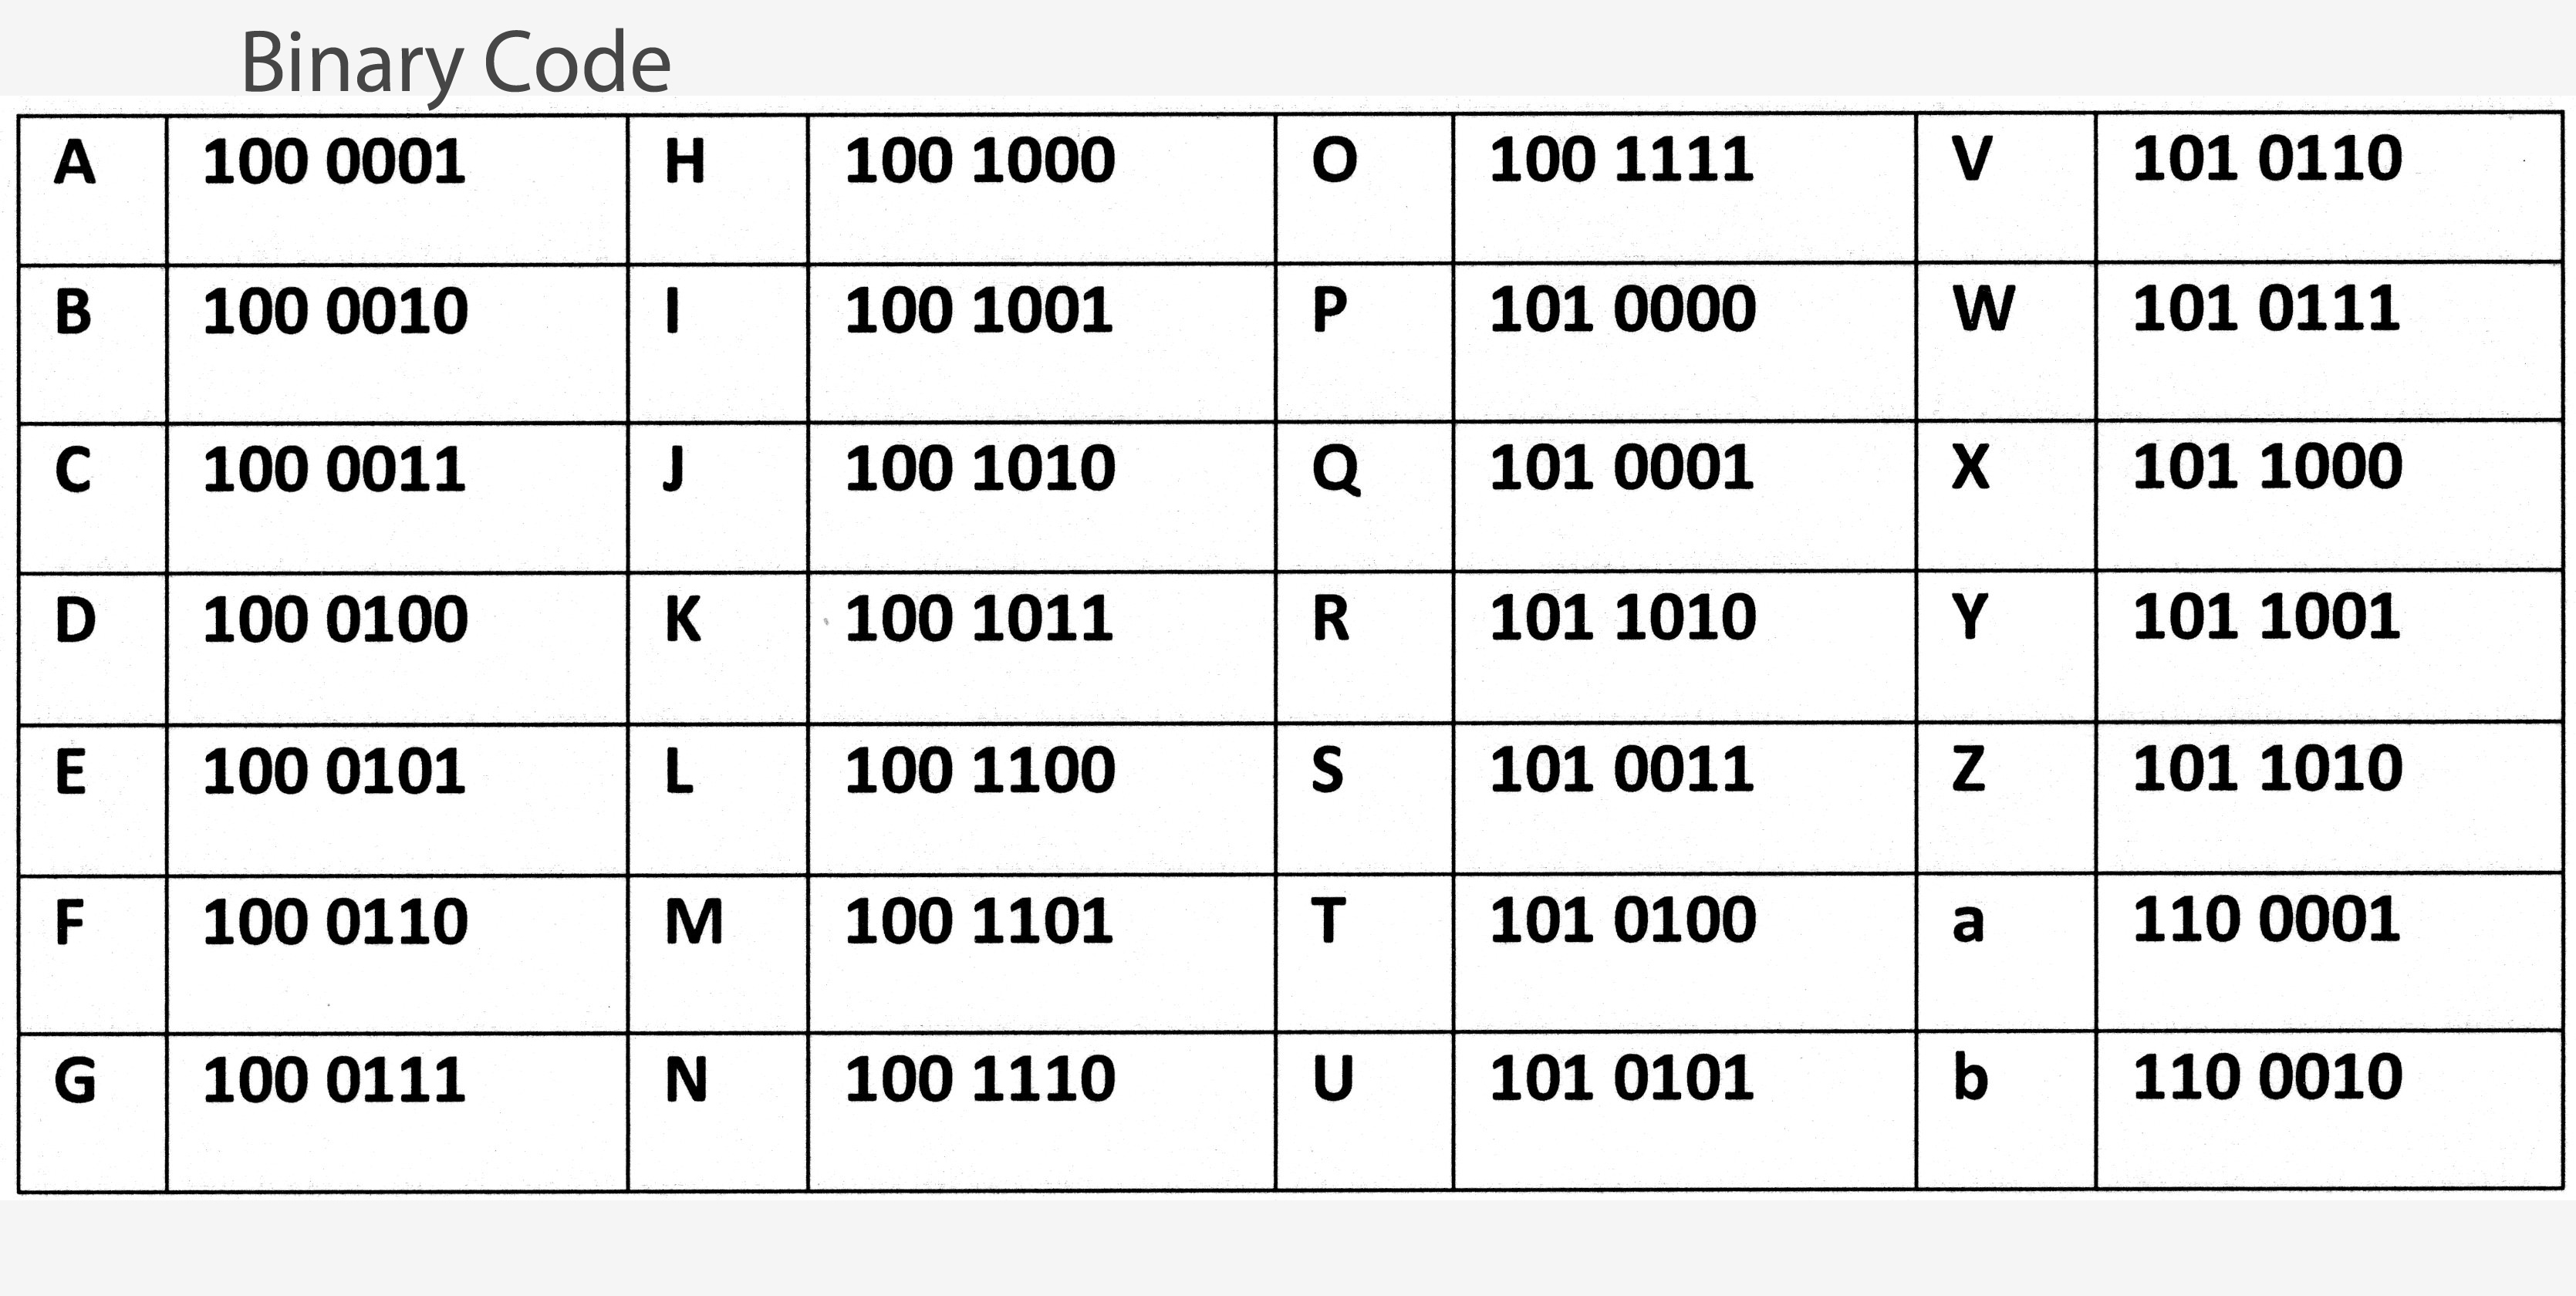 alphabet-0101-binary-code-letter-or-number-karoline-lundblad